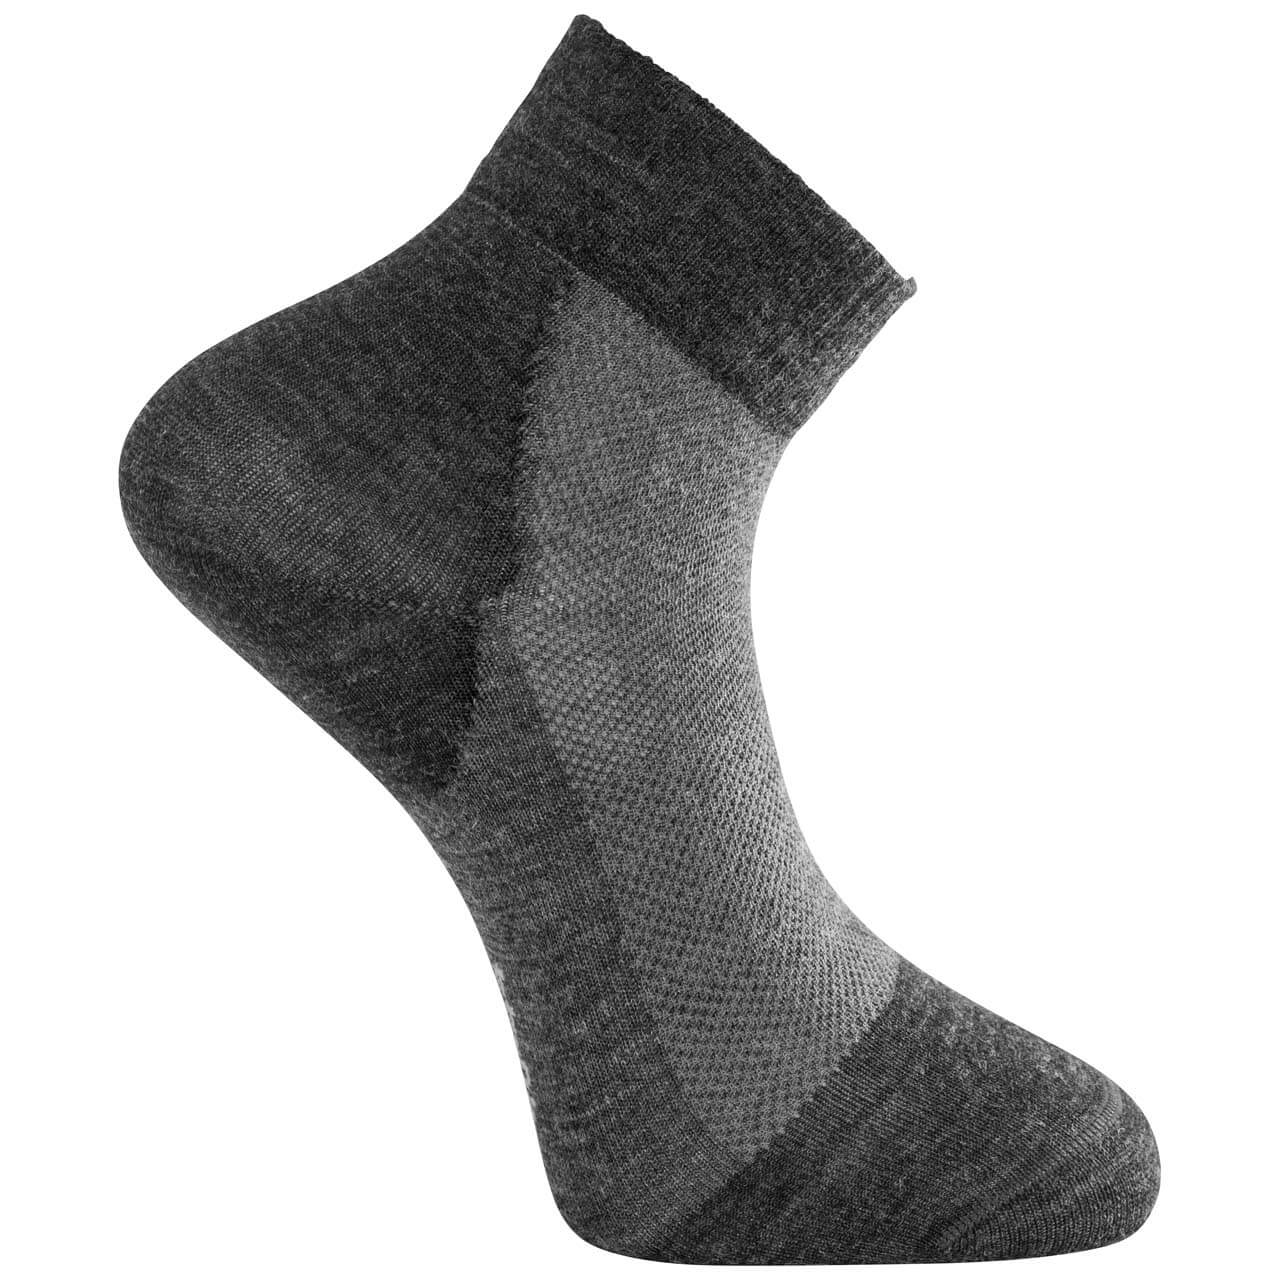 Woolpower Skilled Liner Short - Dark Grey/Grey, 45-48